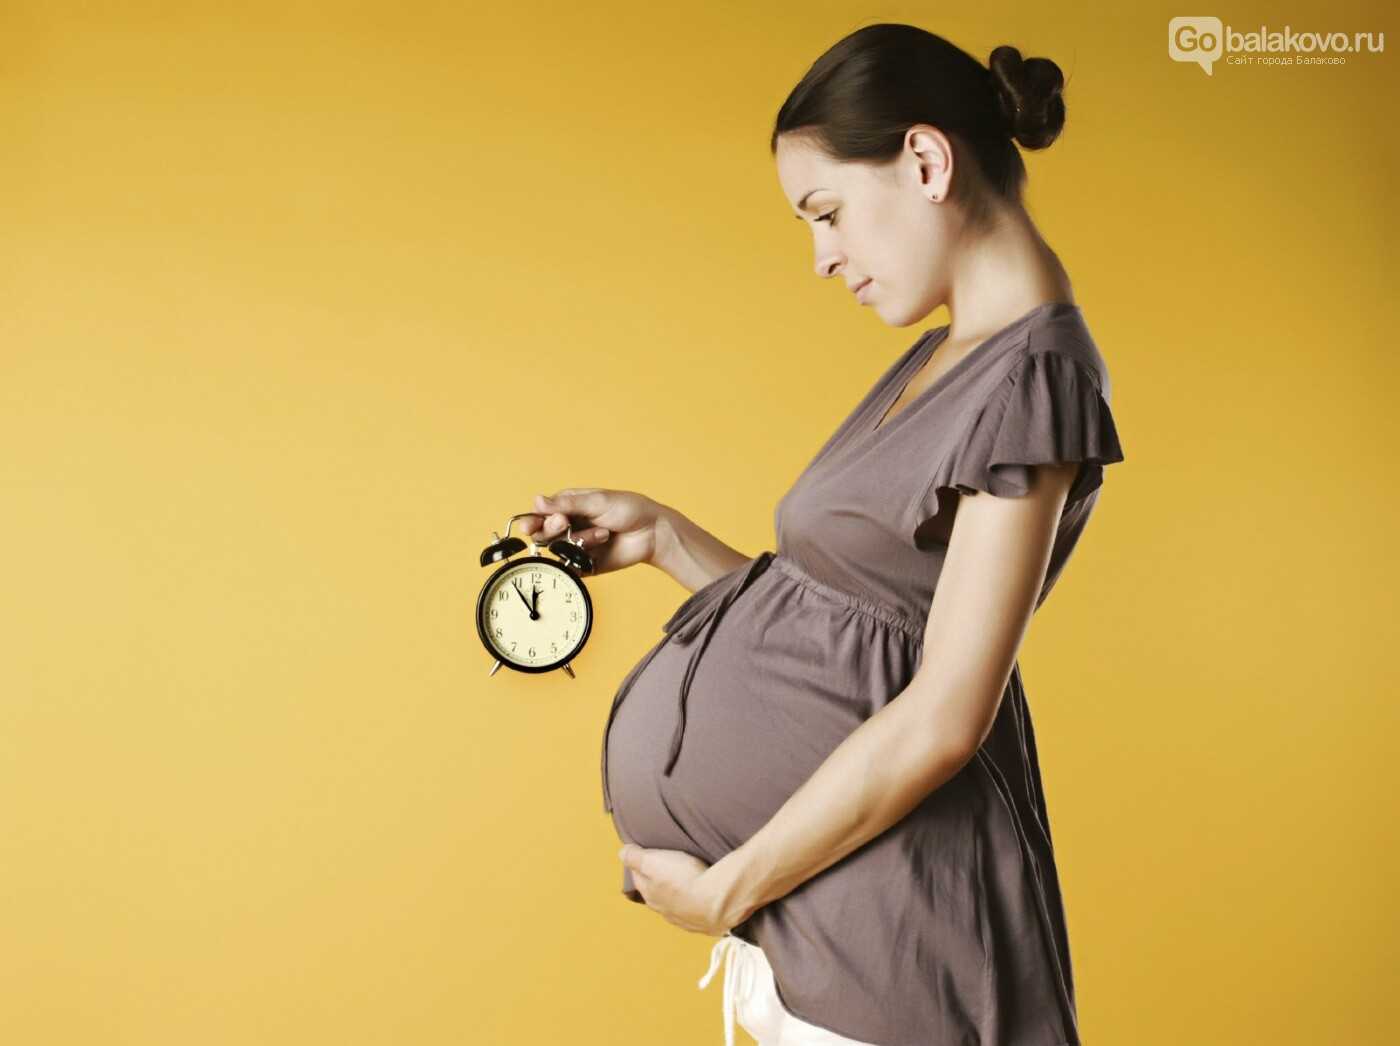 26 неделя беременности: что происходит, развитие, вес, рост